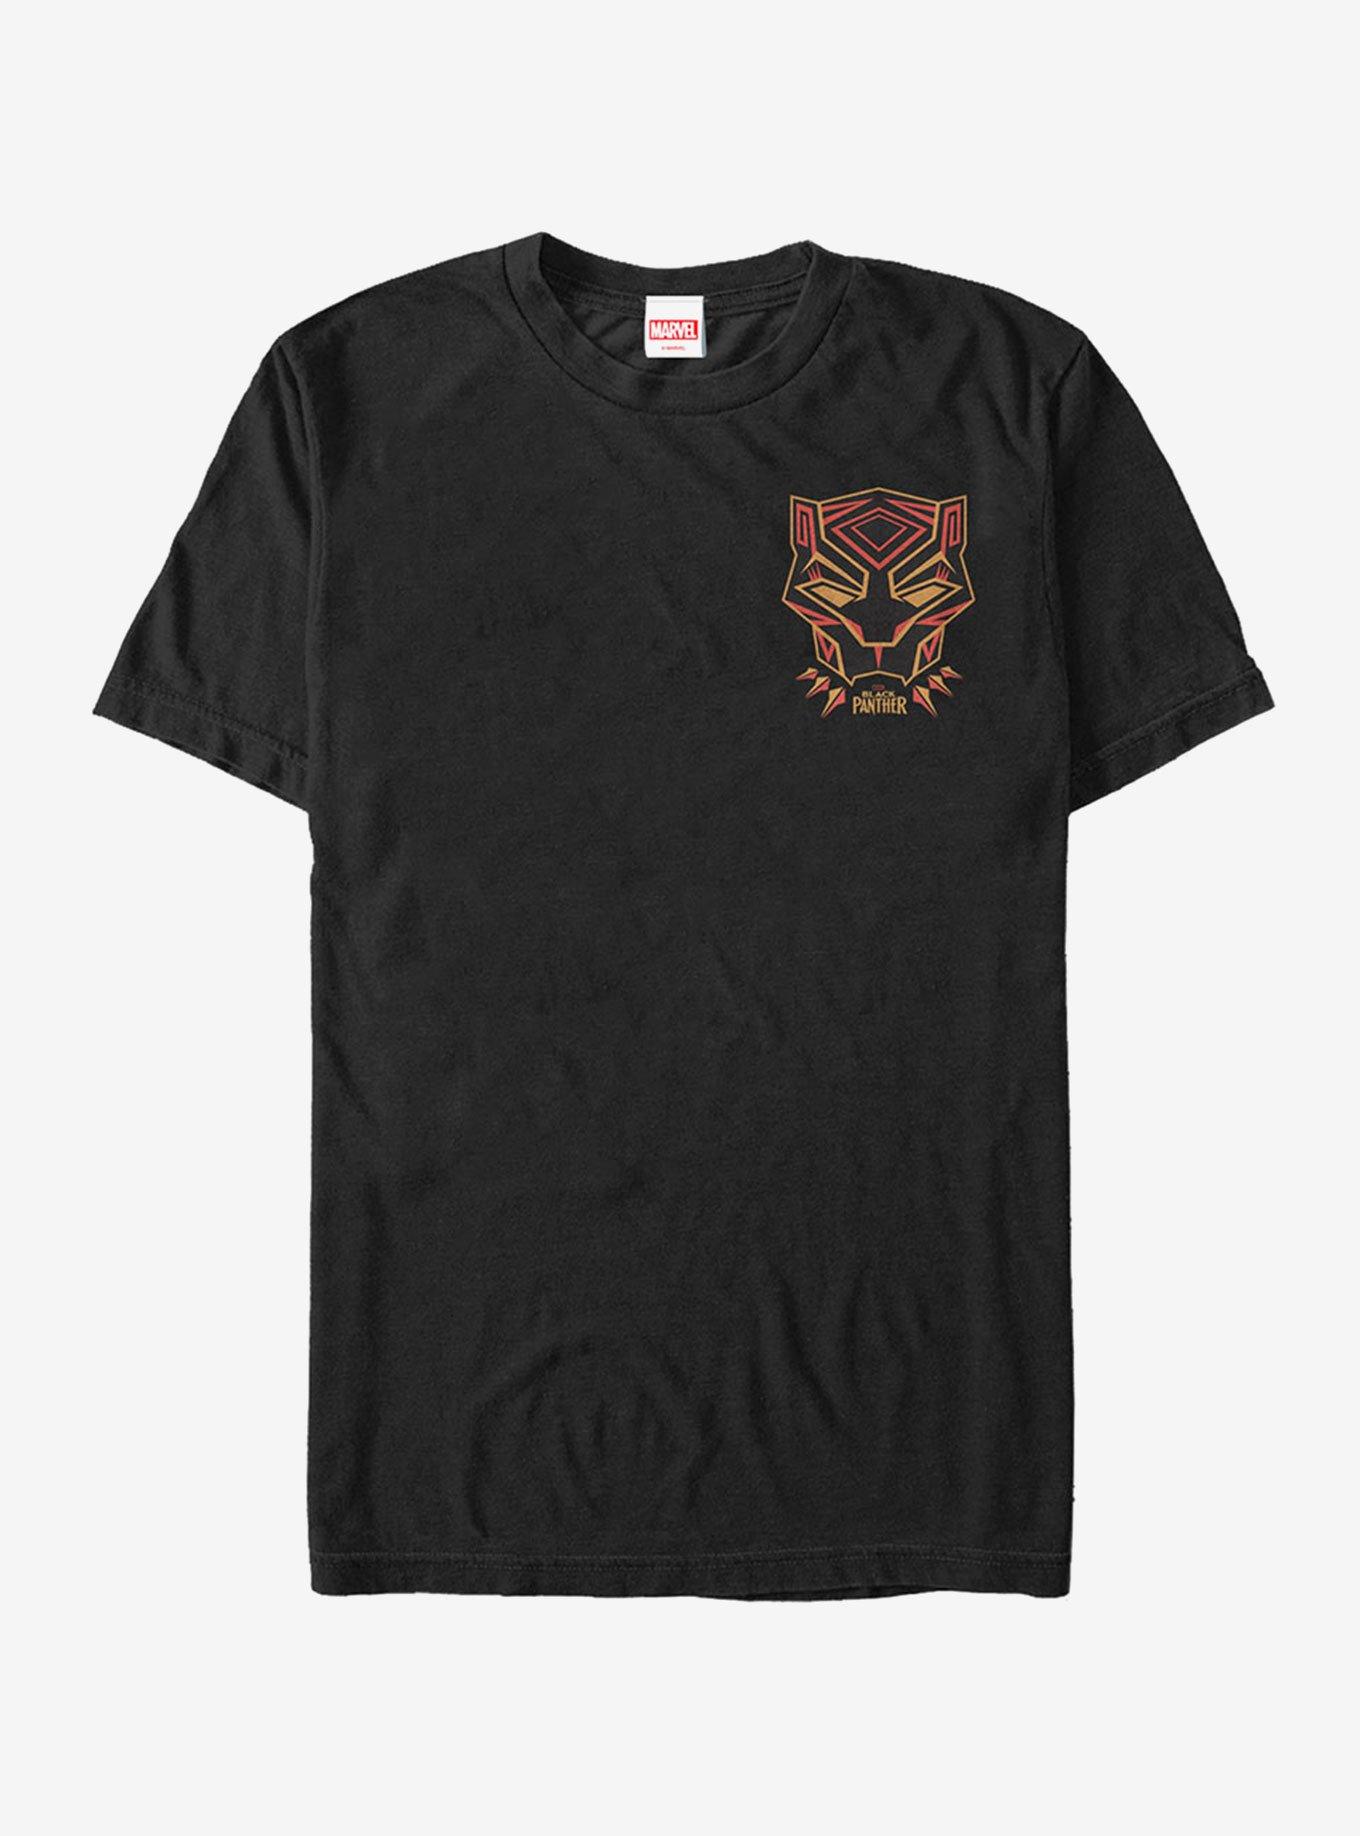 Marvel Black Panther 2018 Mask Badge T-Shirt, BLACK, hi-res